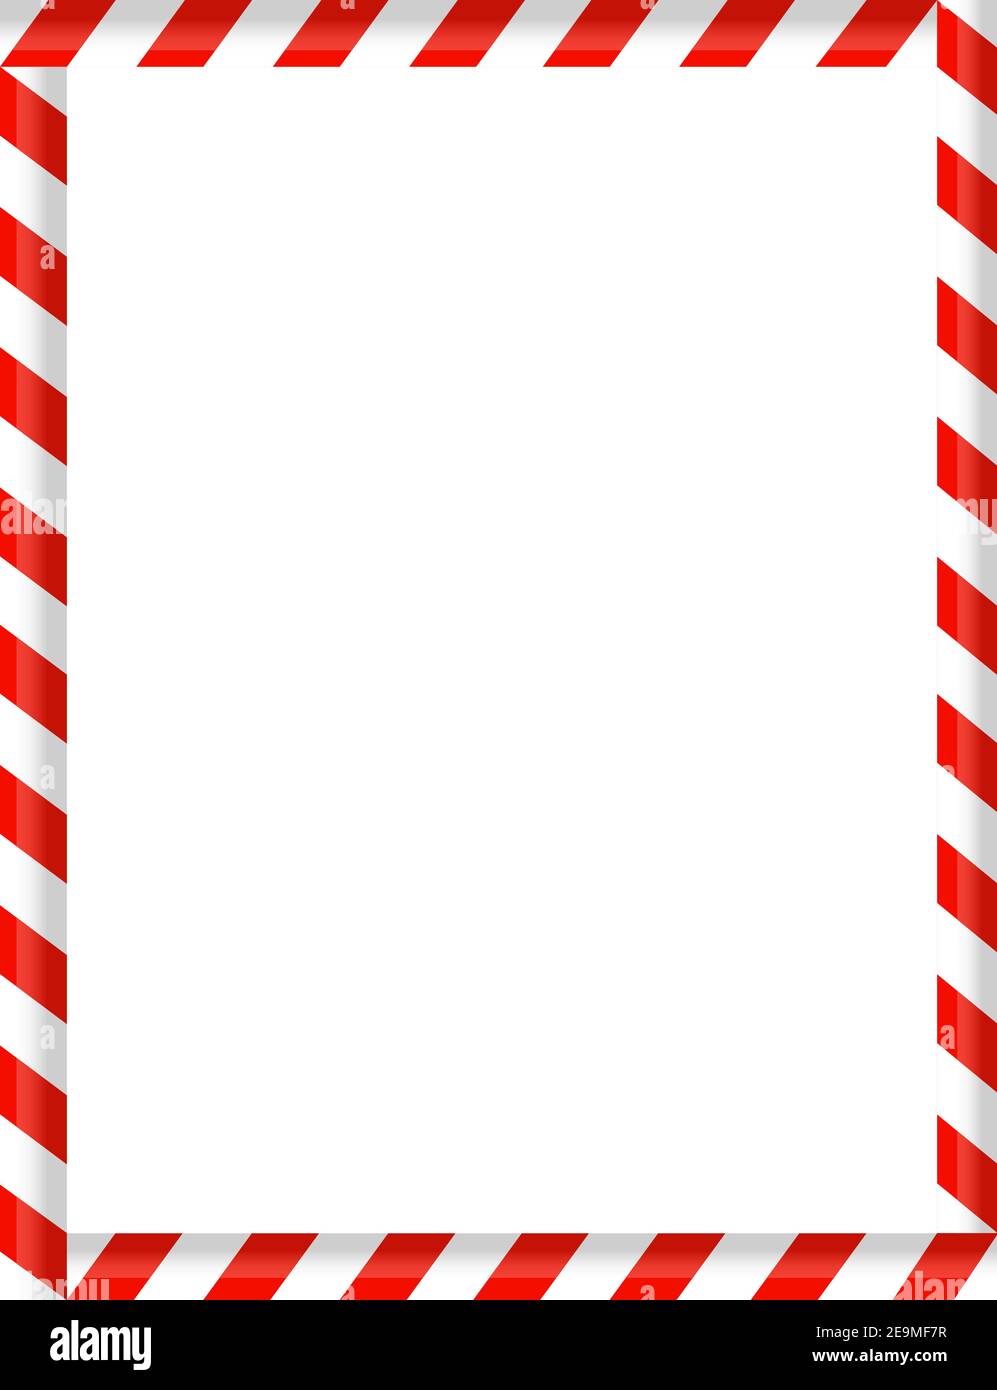 Le caramelle Candy cane come cornice di bordo sfondo bianco, Natale Capodanno Natale Illustrazione Vettoriale